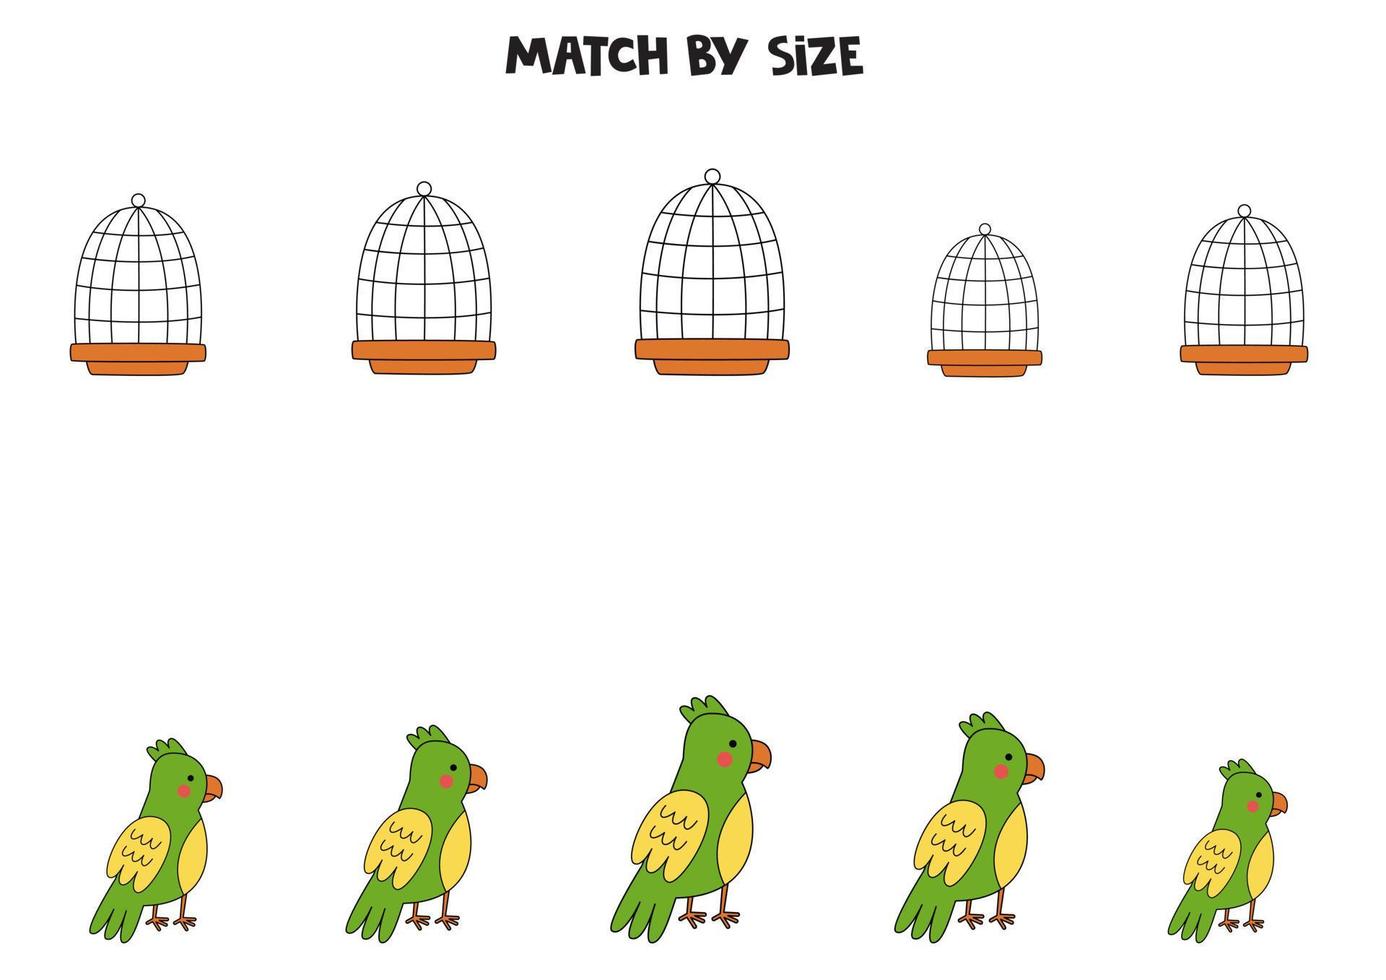 matching game voor kleuters. match papegaaien en kooien op grootte. vector